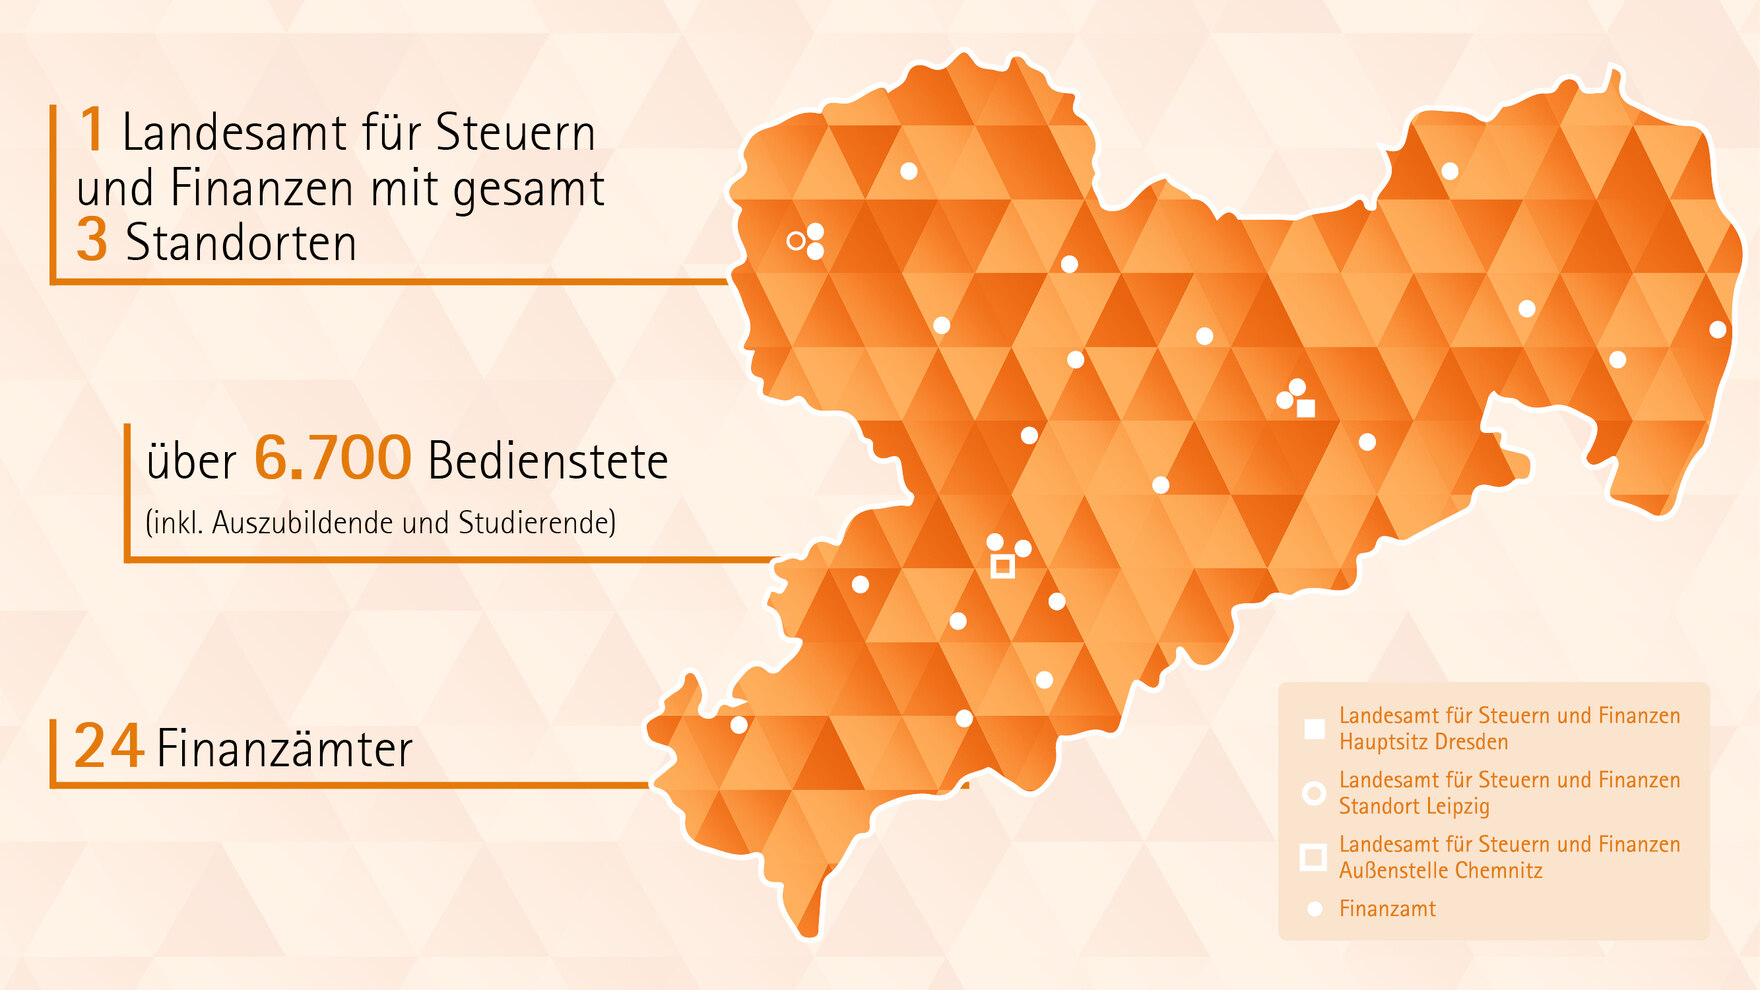 Auf dem Bild ist die landkarte des Freistaates Sachsen in orange abgebildet. Auf dieser sind in weißen Punkten die jeweiligen Standorte der 24 sächsischen Finanzämter wie auch des Landesamtes für Steuern und Finanzen in Dresden, Chemnitz und Leipzig abgeb